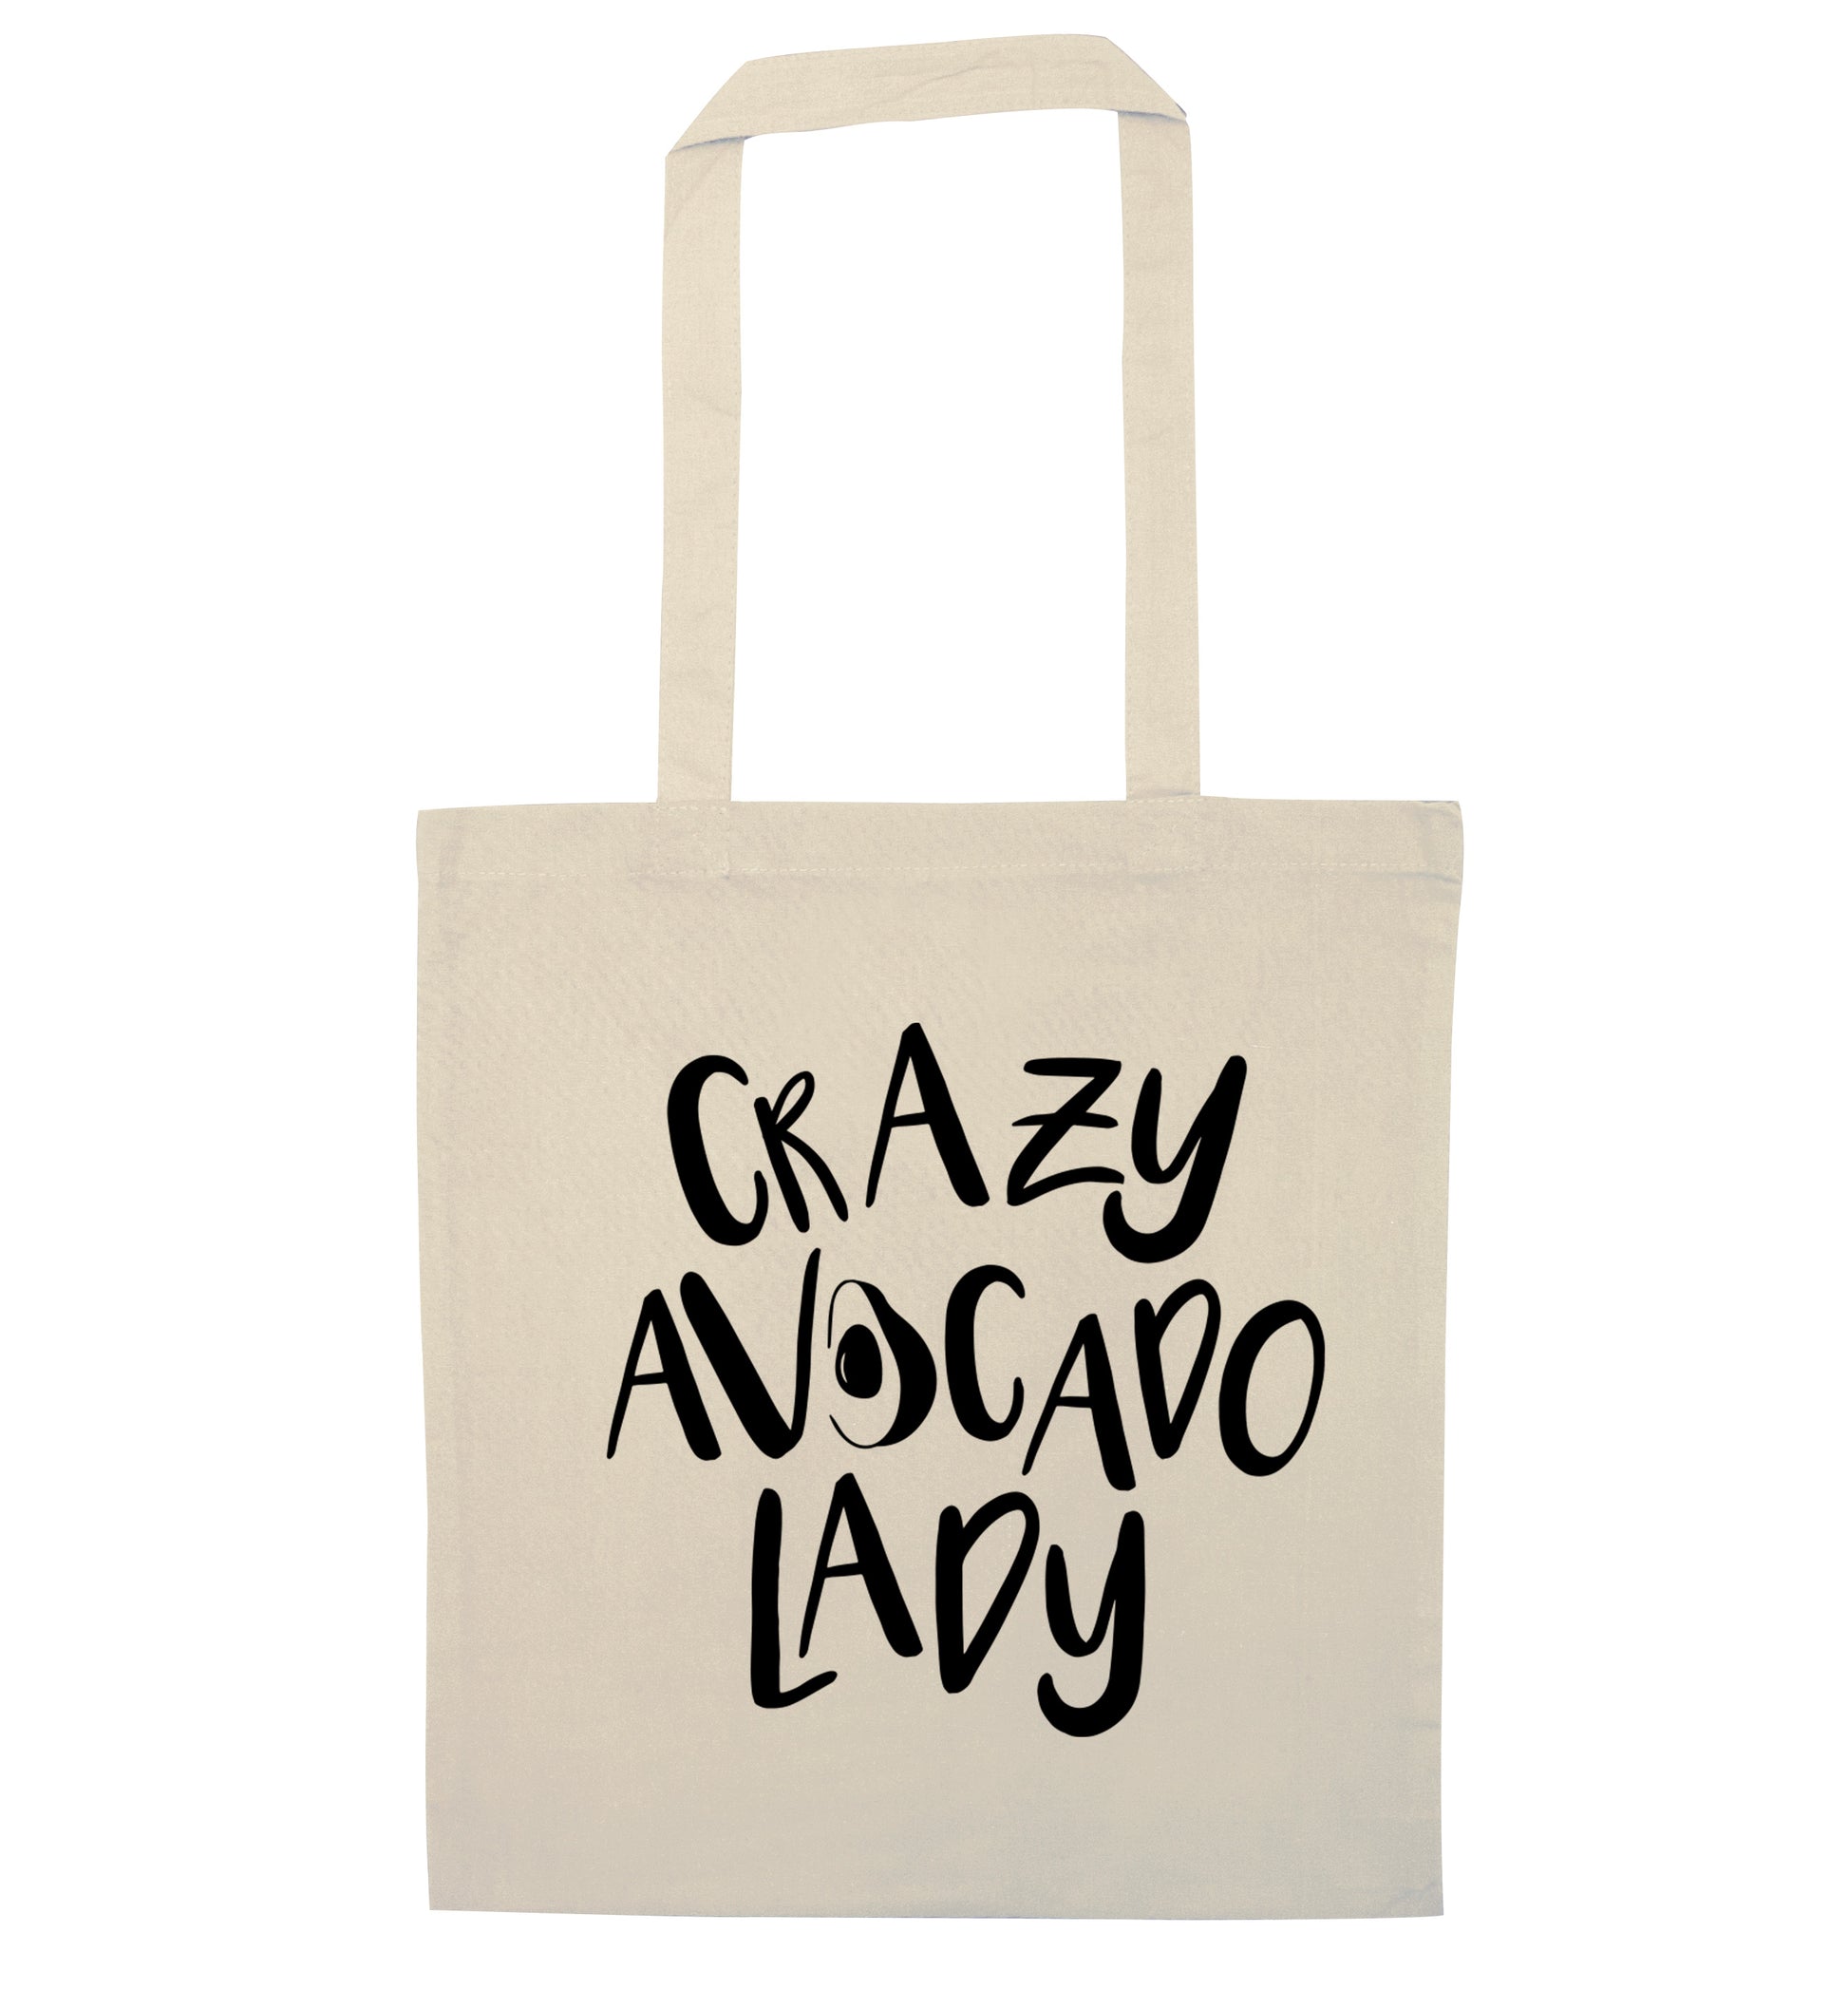 Crazy avocado lady natural tote bag